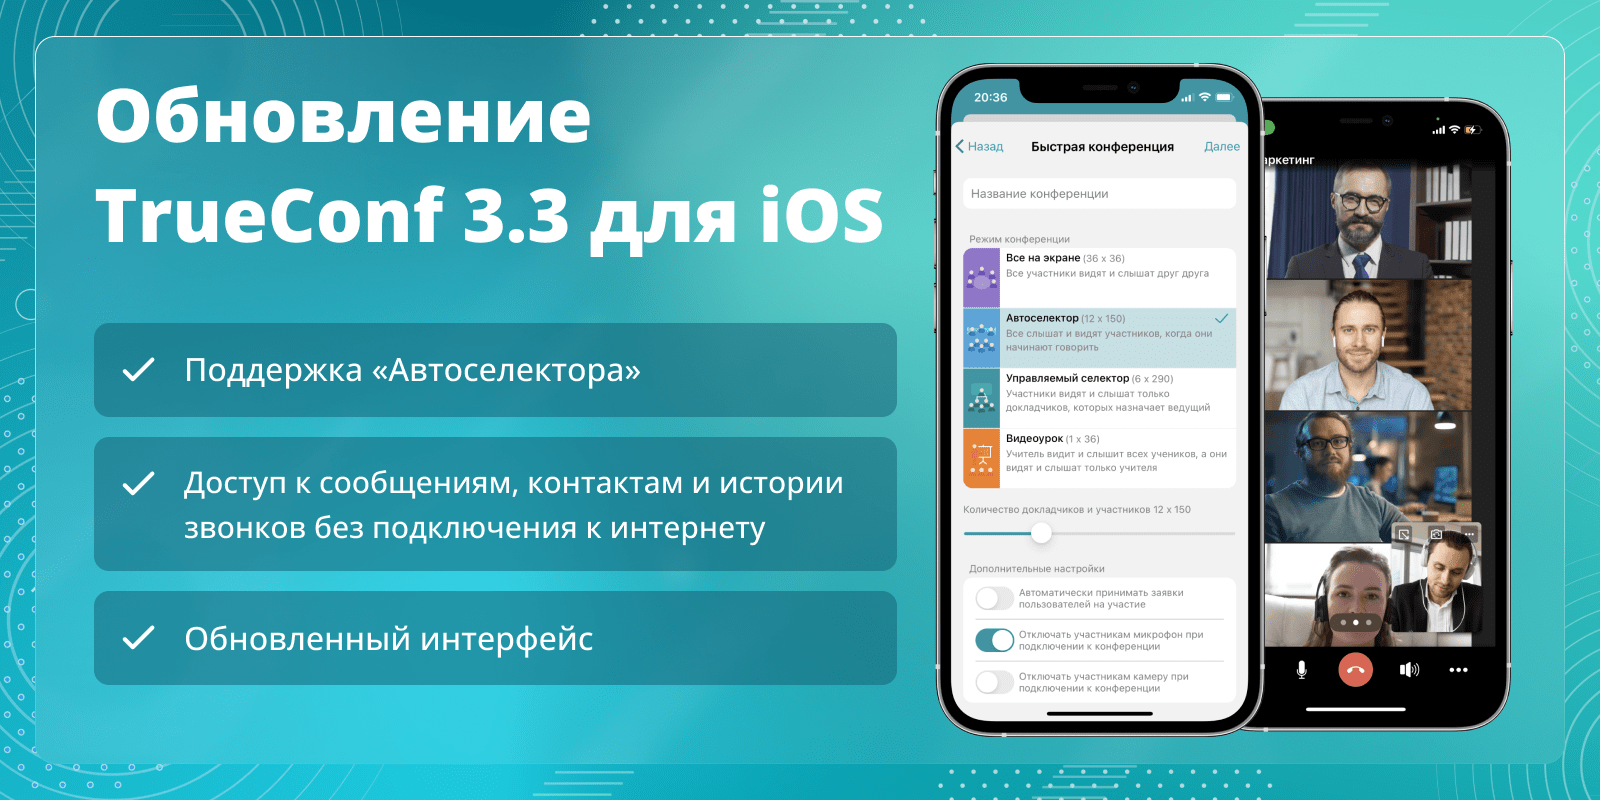 TrueConf 3.3 для iOS: обновленный интерфейс, поддержка «Автоселектора» и доступ к сообщениям, контактам, истории звонков без подключения к интернету 1